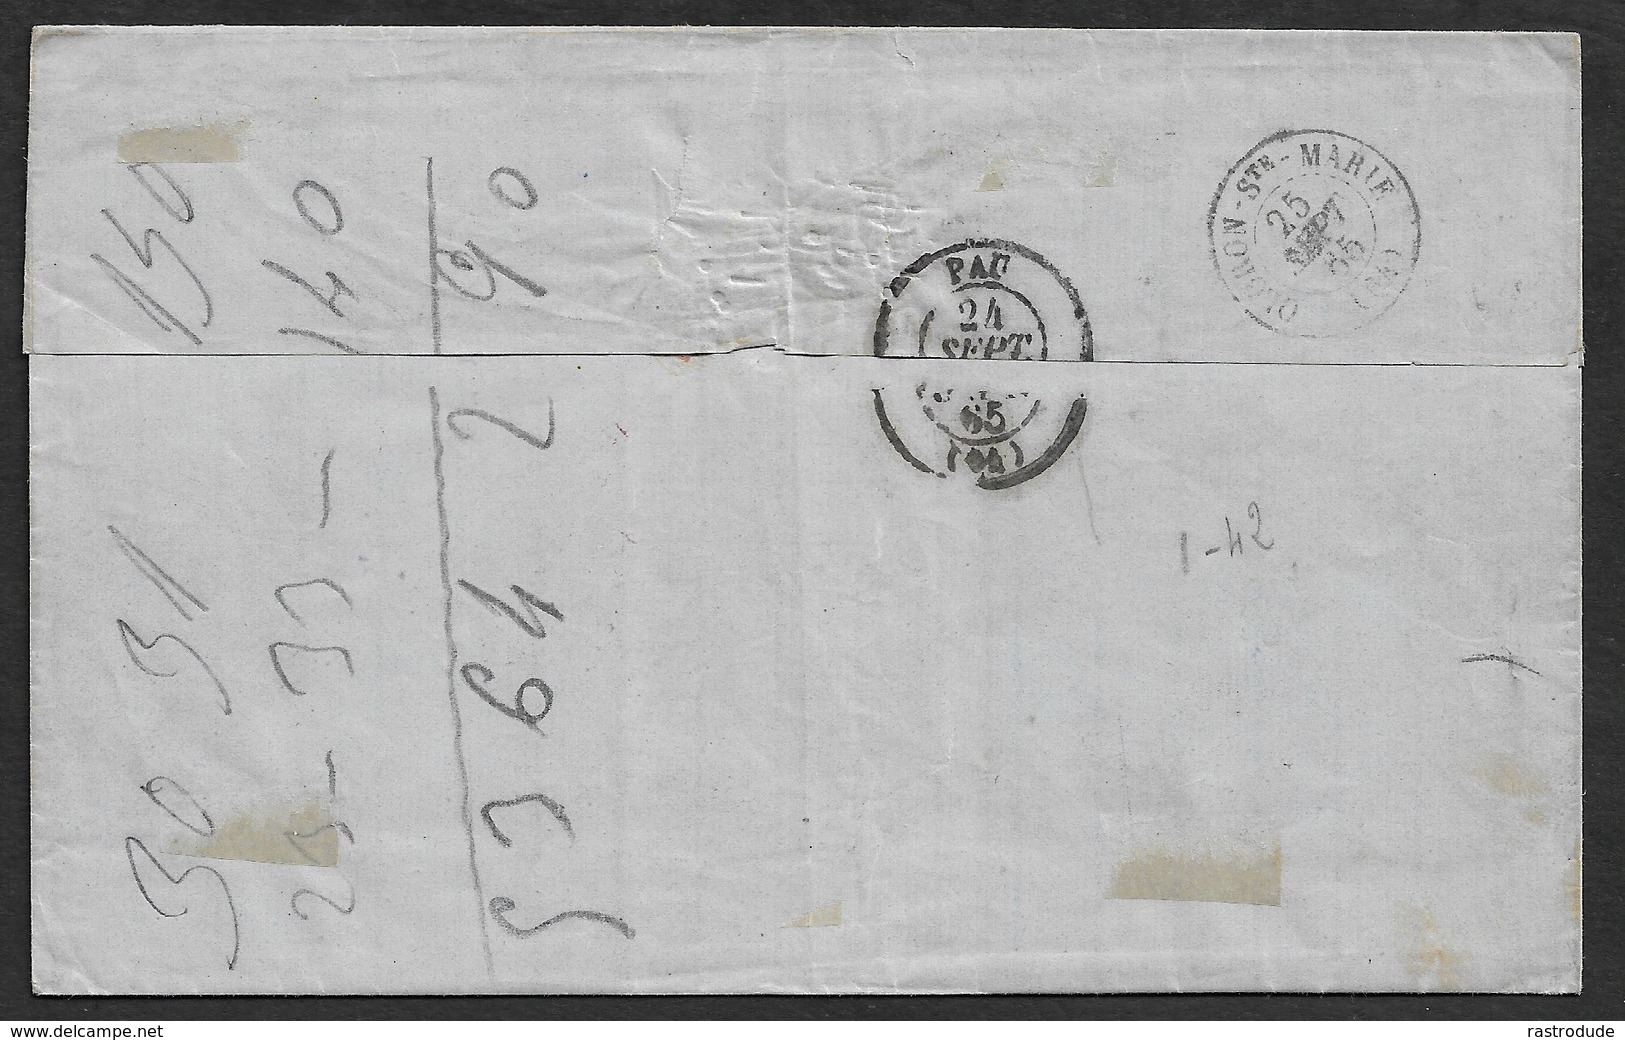 1865 ESPAGNE - 12cu ED.70 MERIDA A OLORON-St.MARIE ( Pyrénées-Atlantiques ). - Lettres & Documents